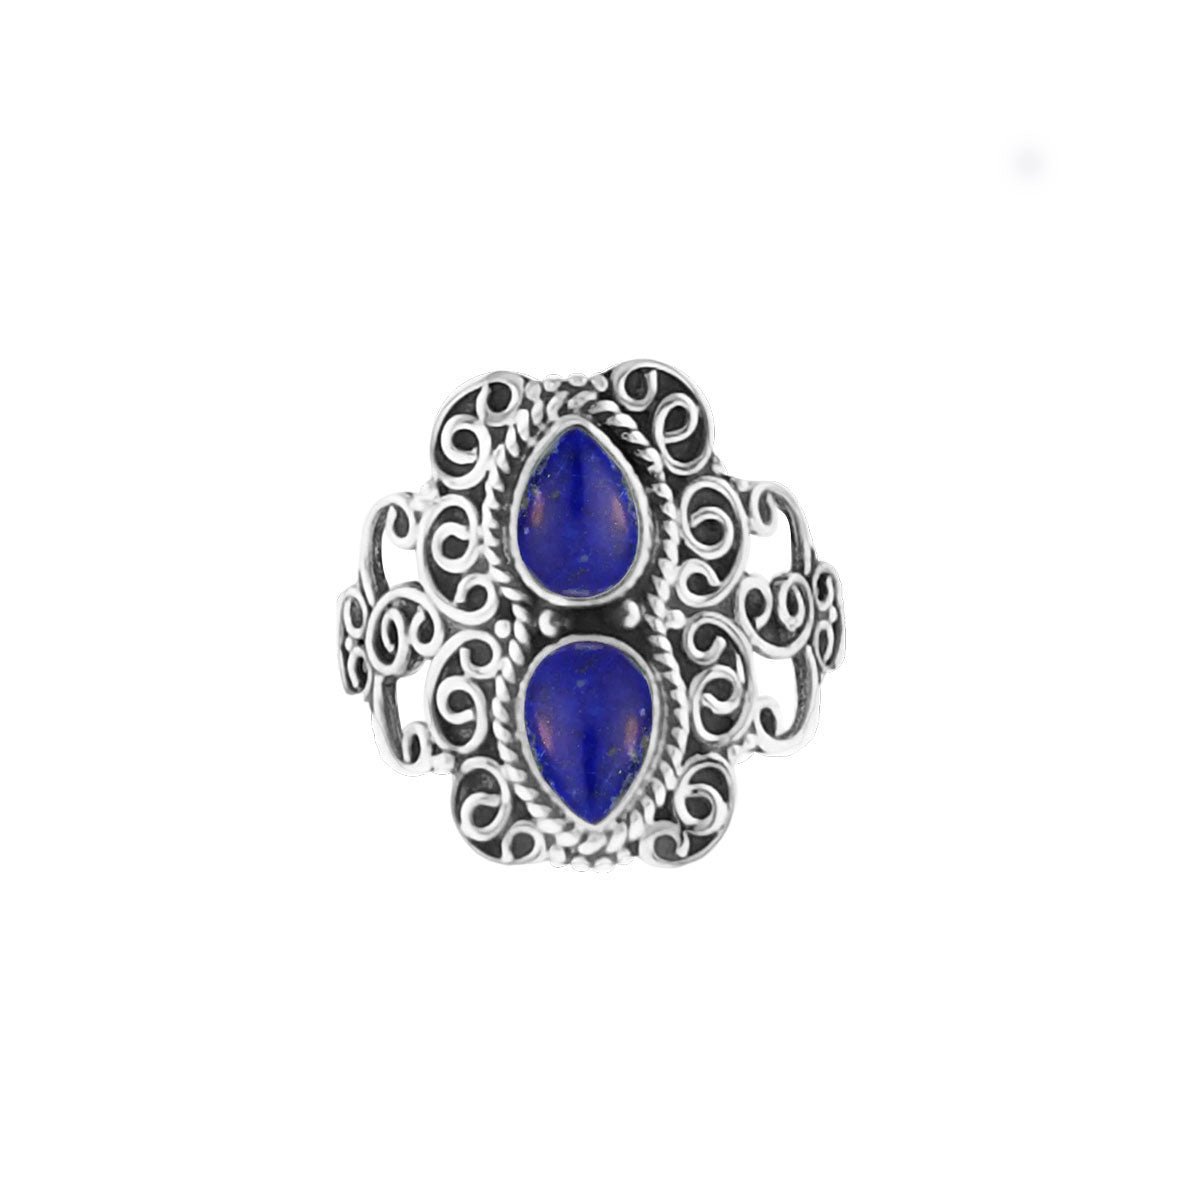 Jewelryz | Mirza | Ring 925 zilver met edelsteen lapis lazuli | 17.00 mm / maat 53